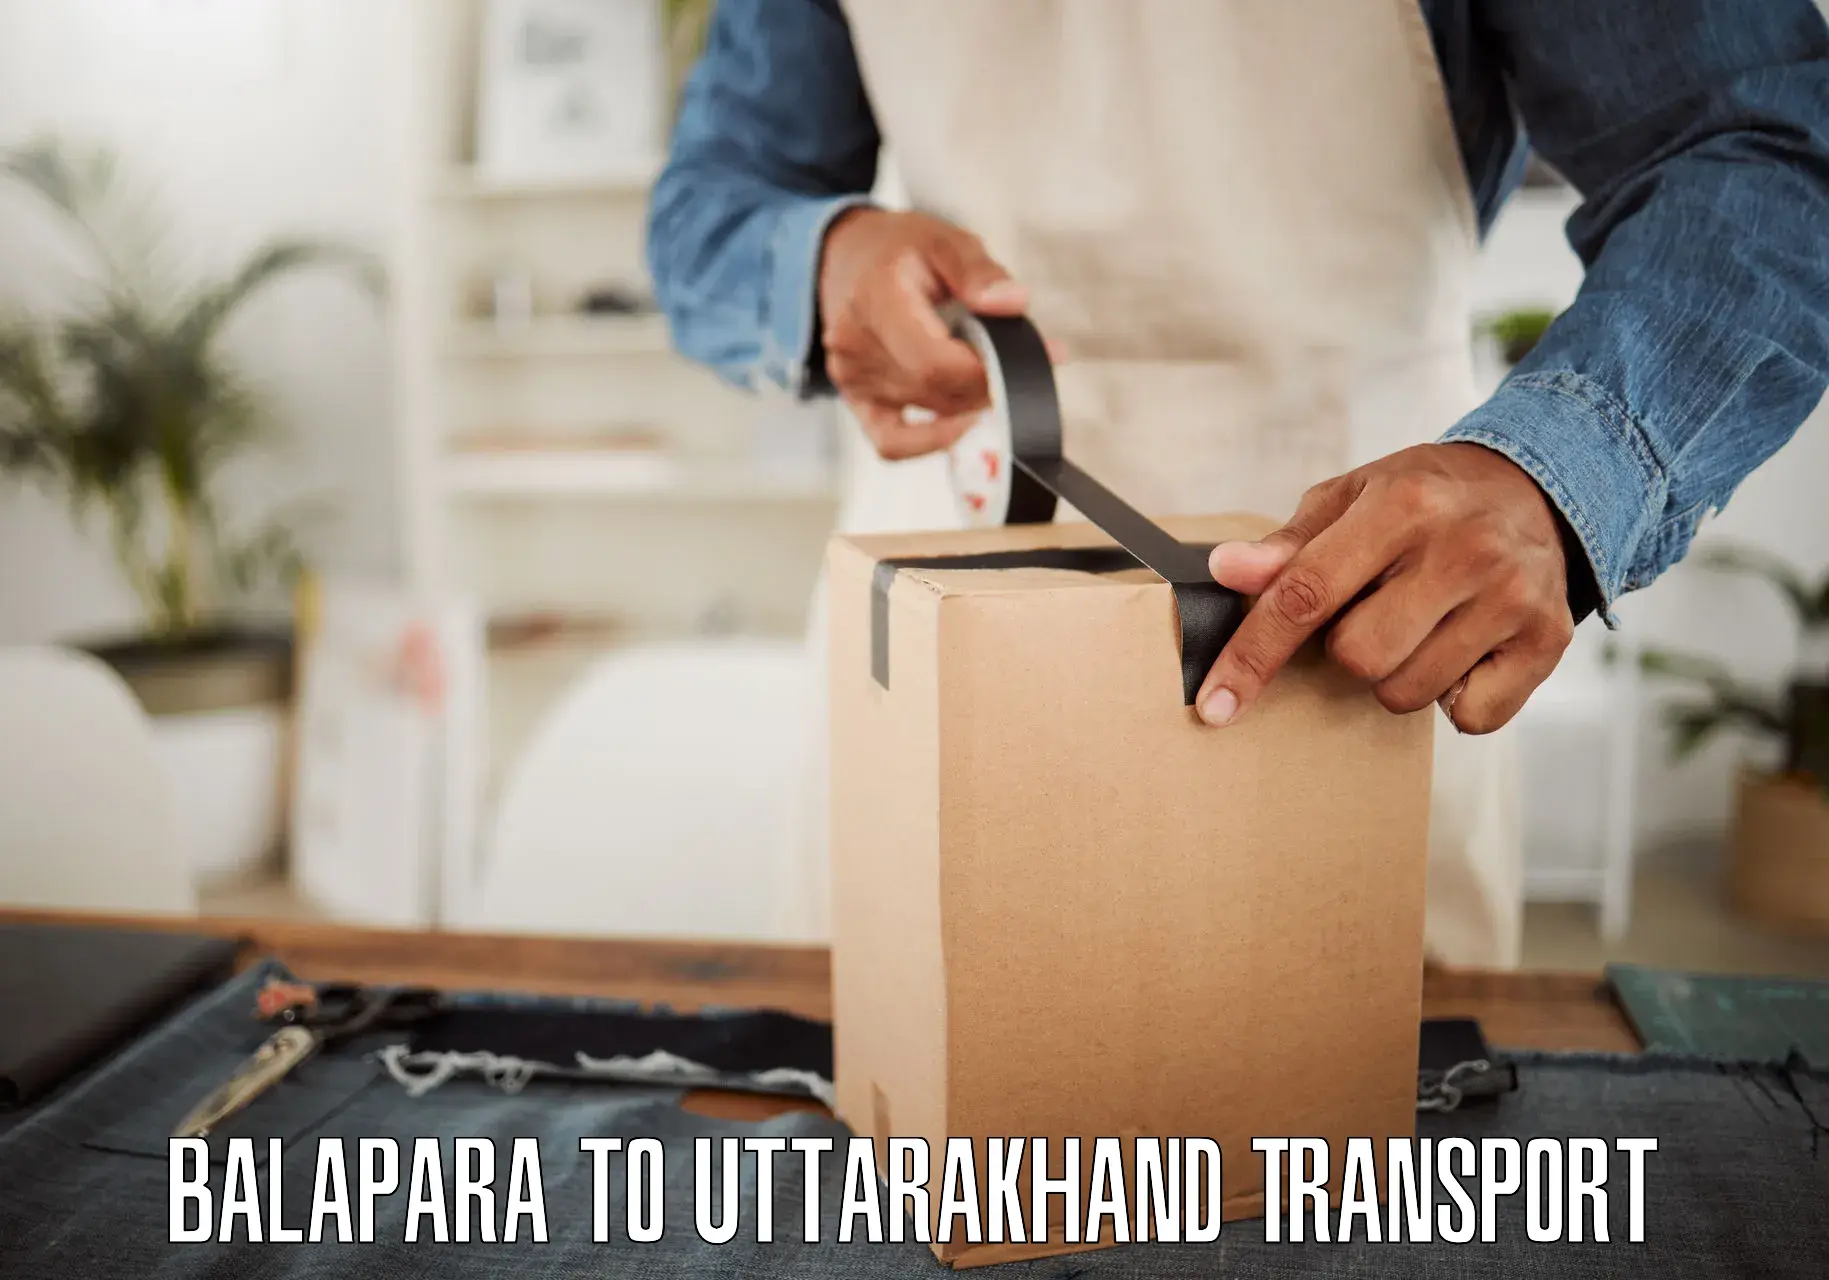 Lorry transport service Balapara to Pithoragarh